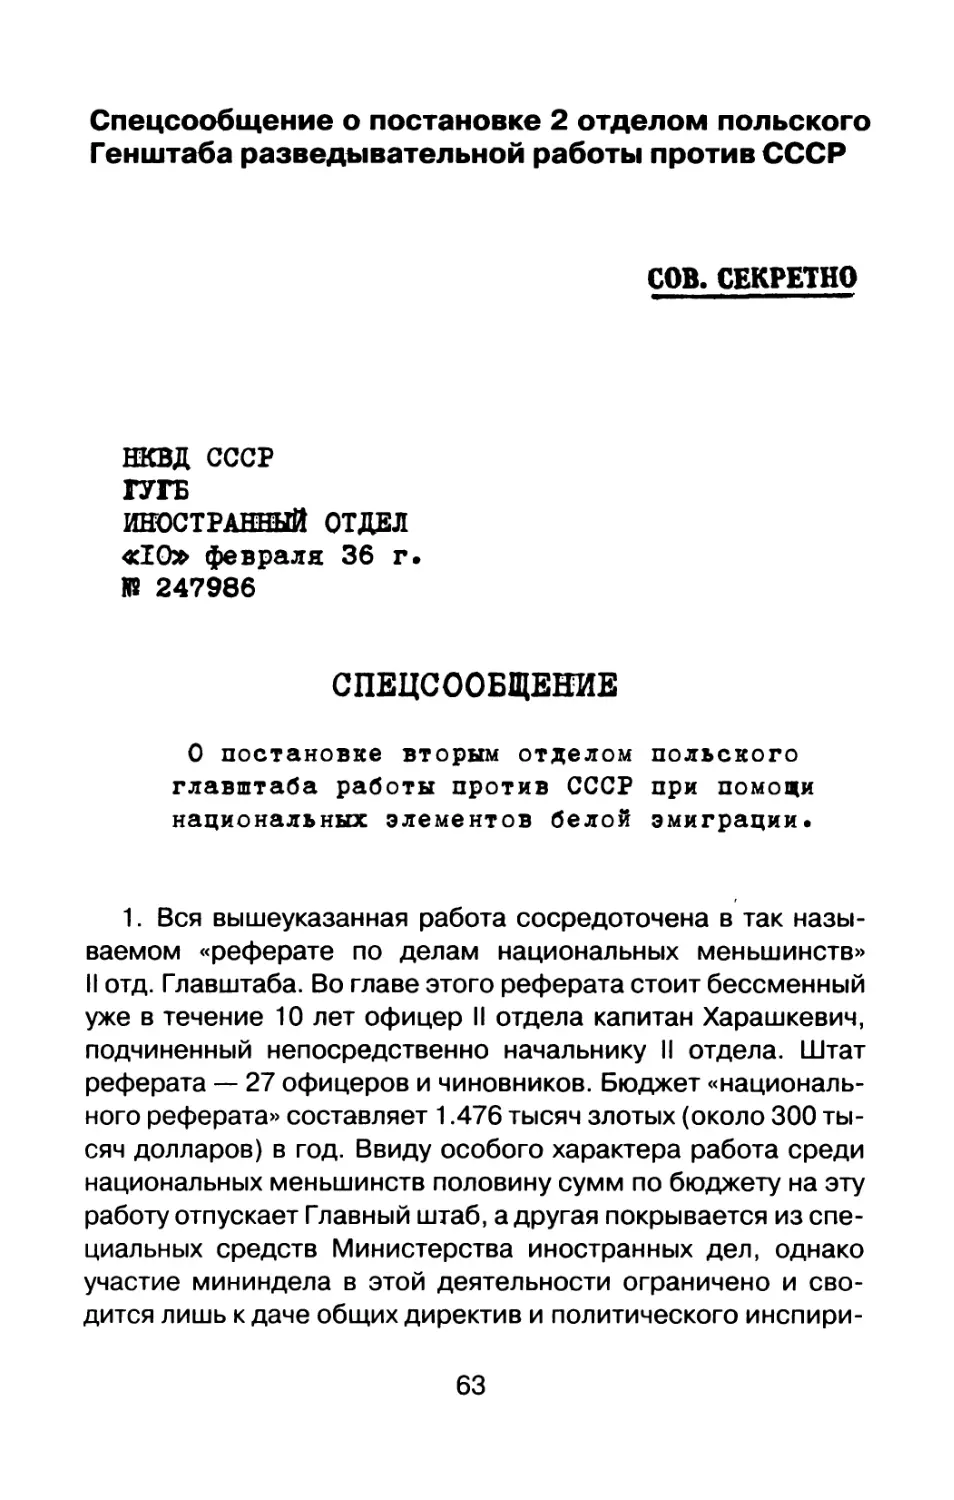 Спецсообщение о постановке 2 отделом польского Генштаба разведывательной работы против СССР